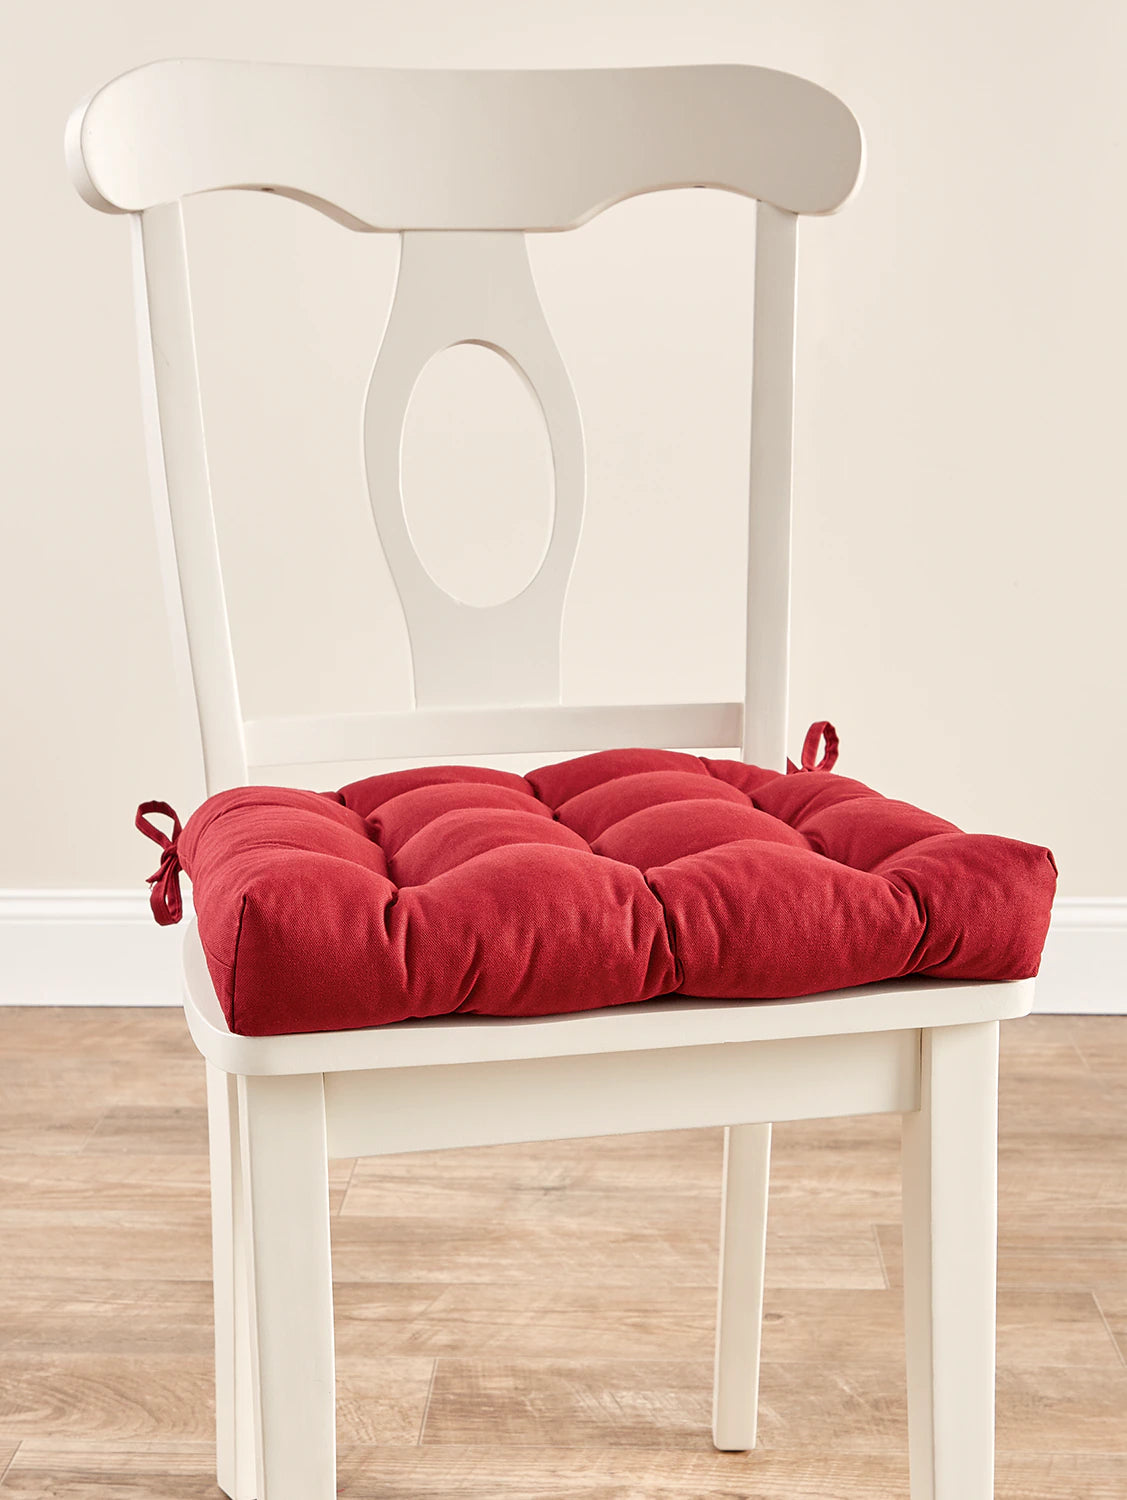 VCS - Never-Flatten Chair Pad - Duck Cloth